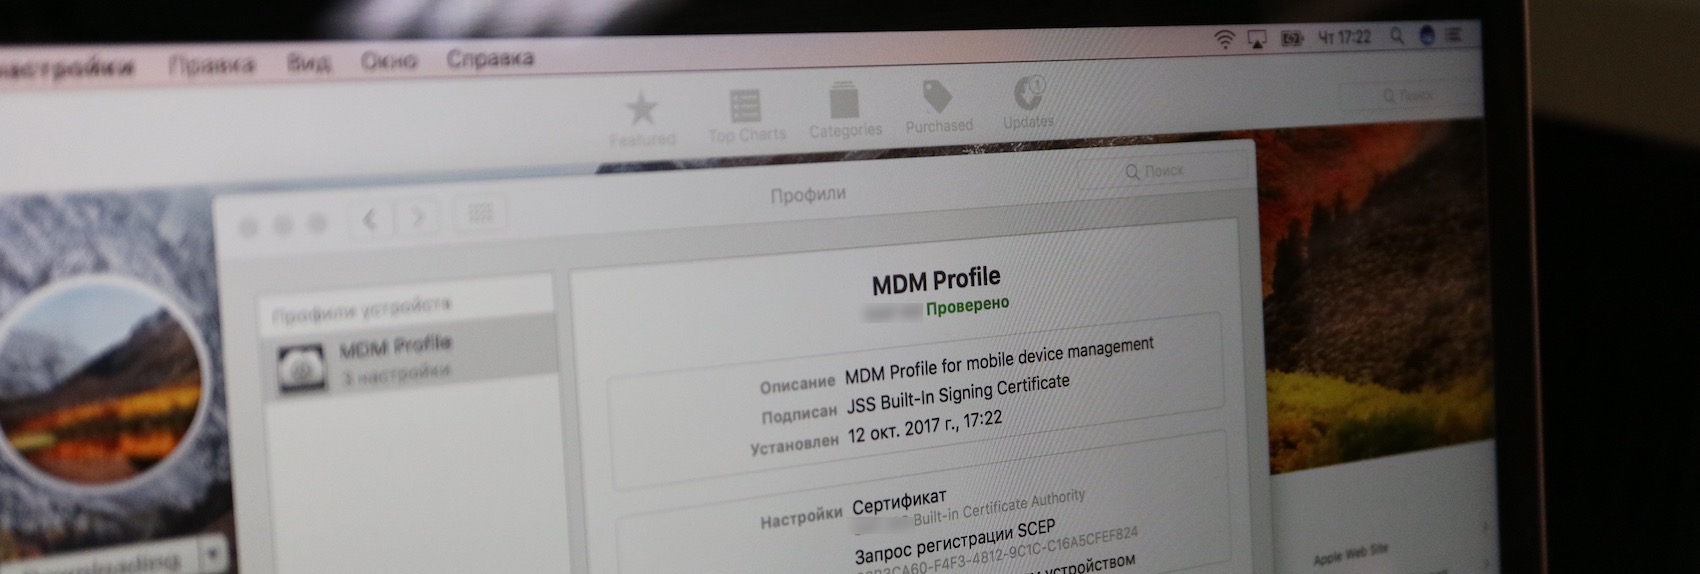 Удаление MDM профиля, iCloud lock, efi password lock с любого apple MacBook - удаление любого типа блокировки с любой модели macbook